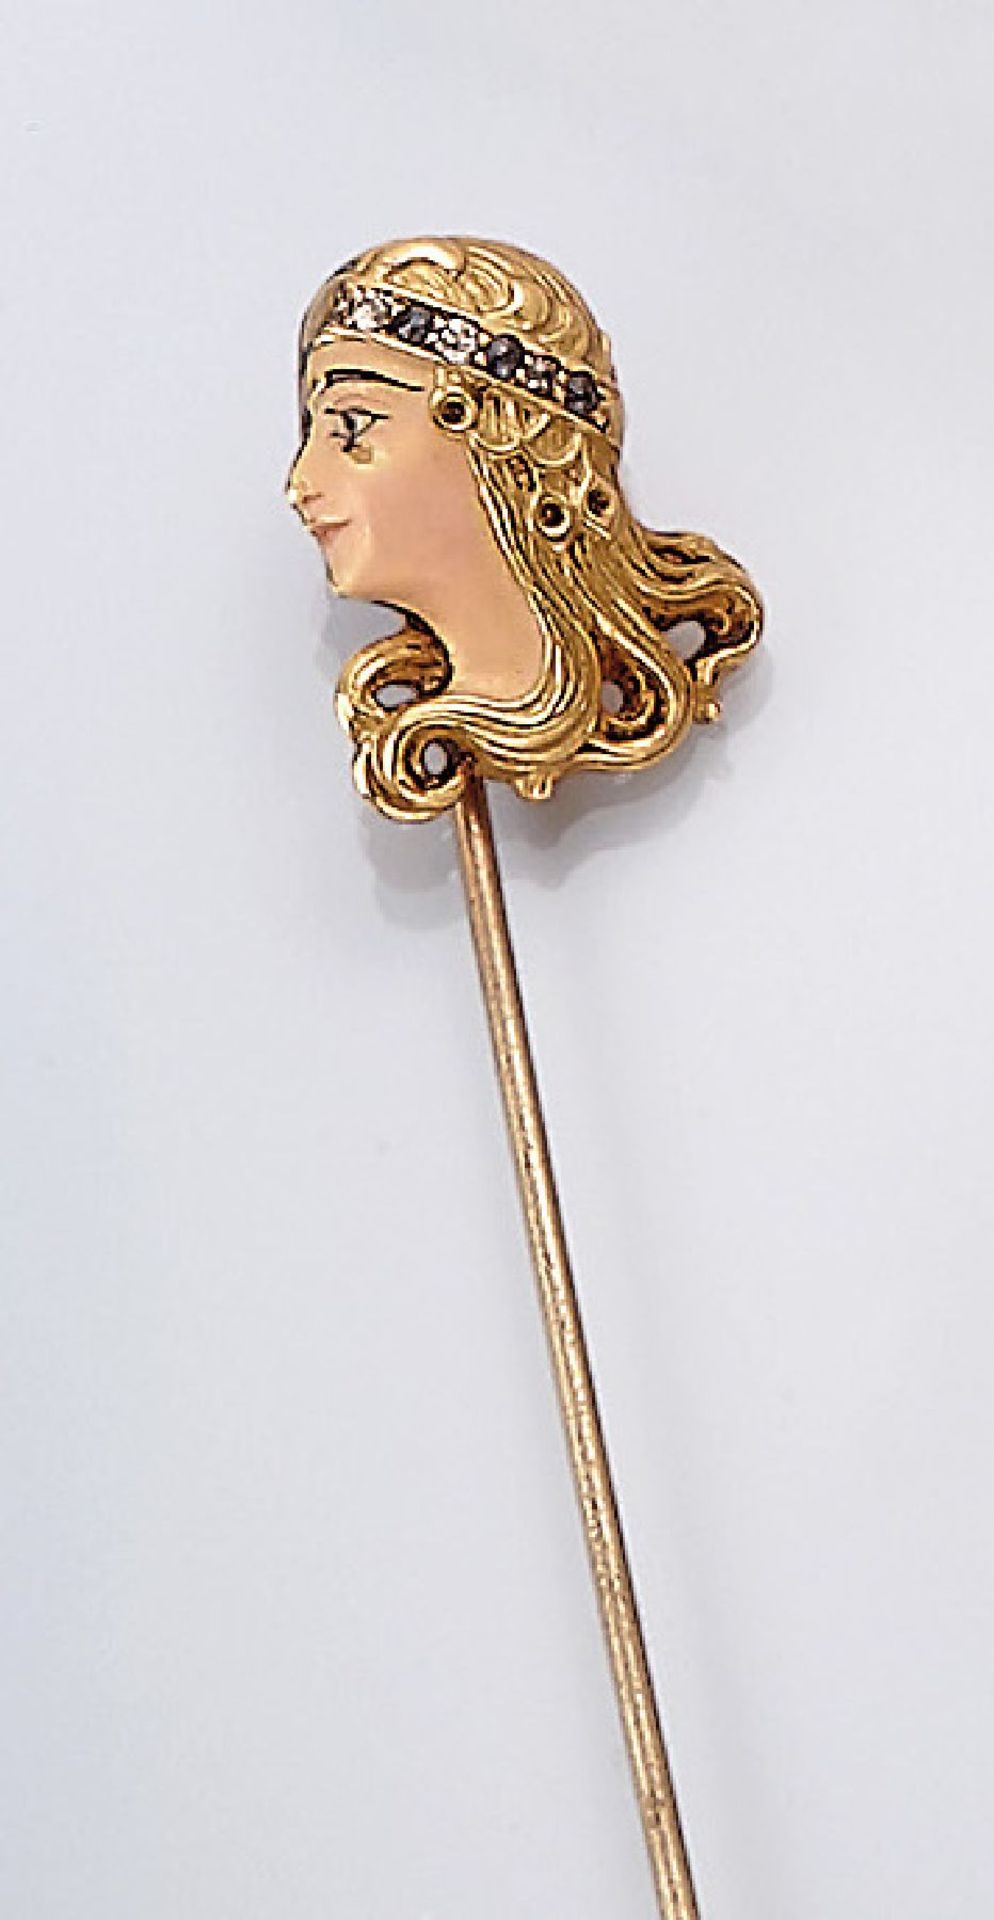 18 kt Gold Jugendstil Krawattennadel, um 1900, GG 750/000, Frauenkopf mit wallendem Haar, Gesicht